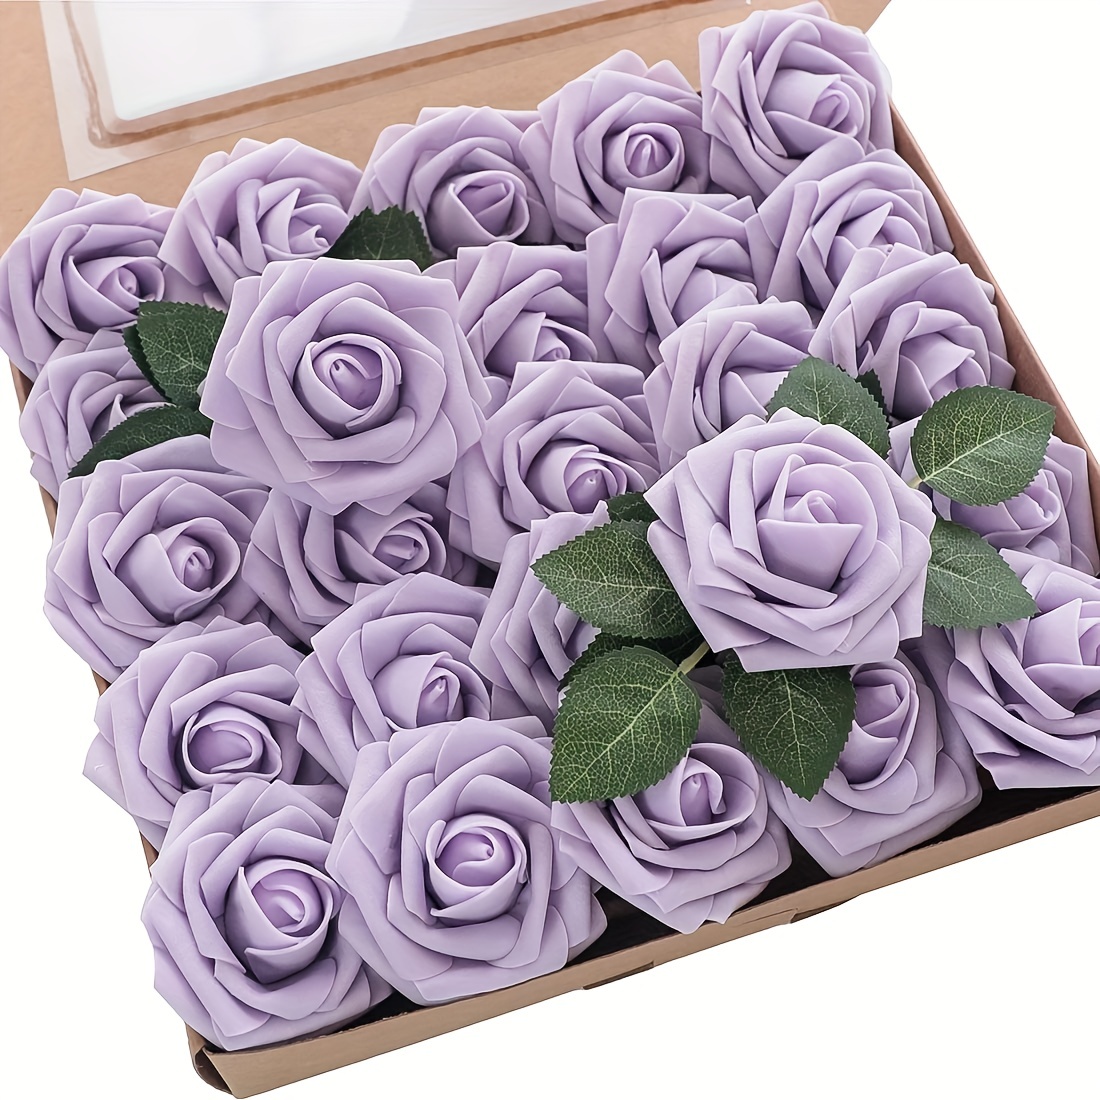 Caja petalos de rosa para lanzar en las bodas 1,95€